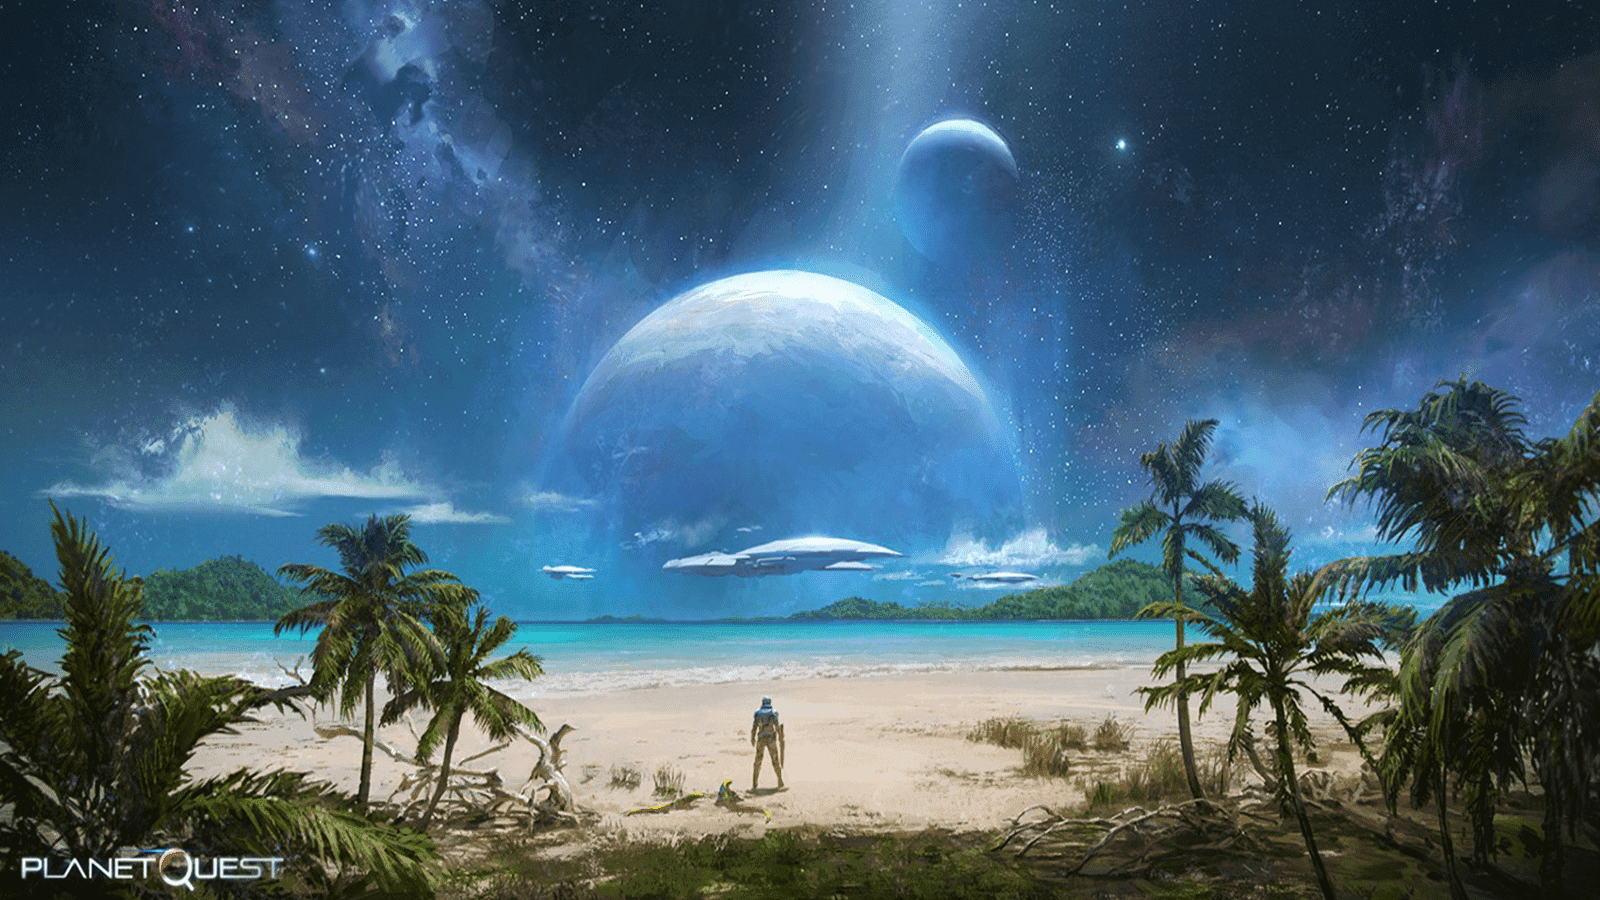 प्लैनेटक्वेस्ट में, खिलाड़ी ग्रह खोजकर्ता और संरक्षक की भूमिका निभाते हैं।